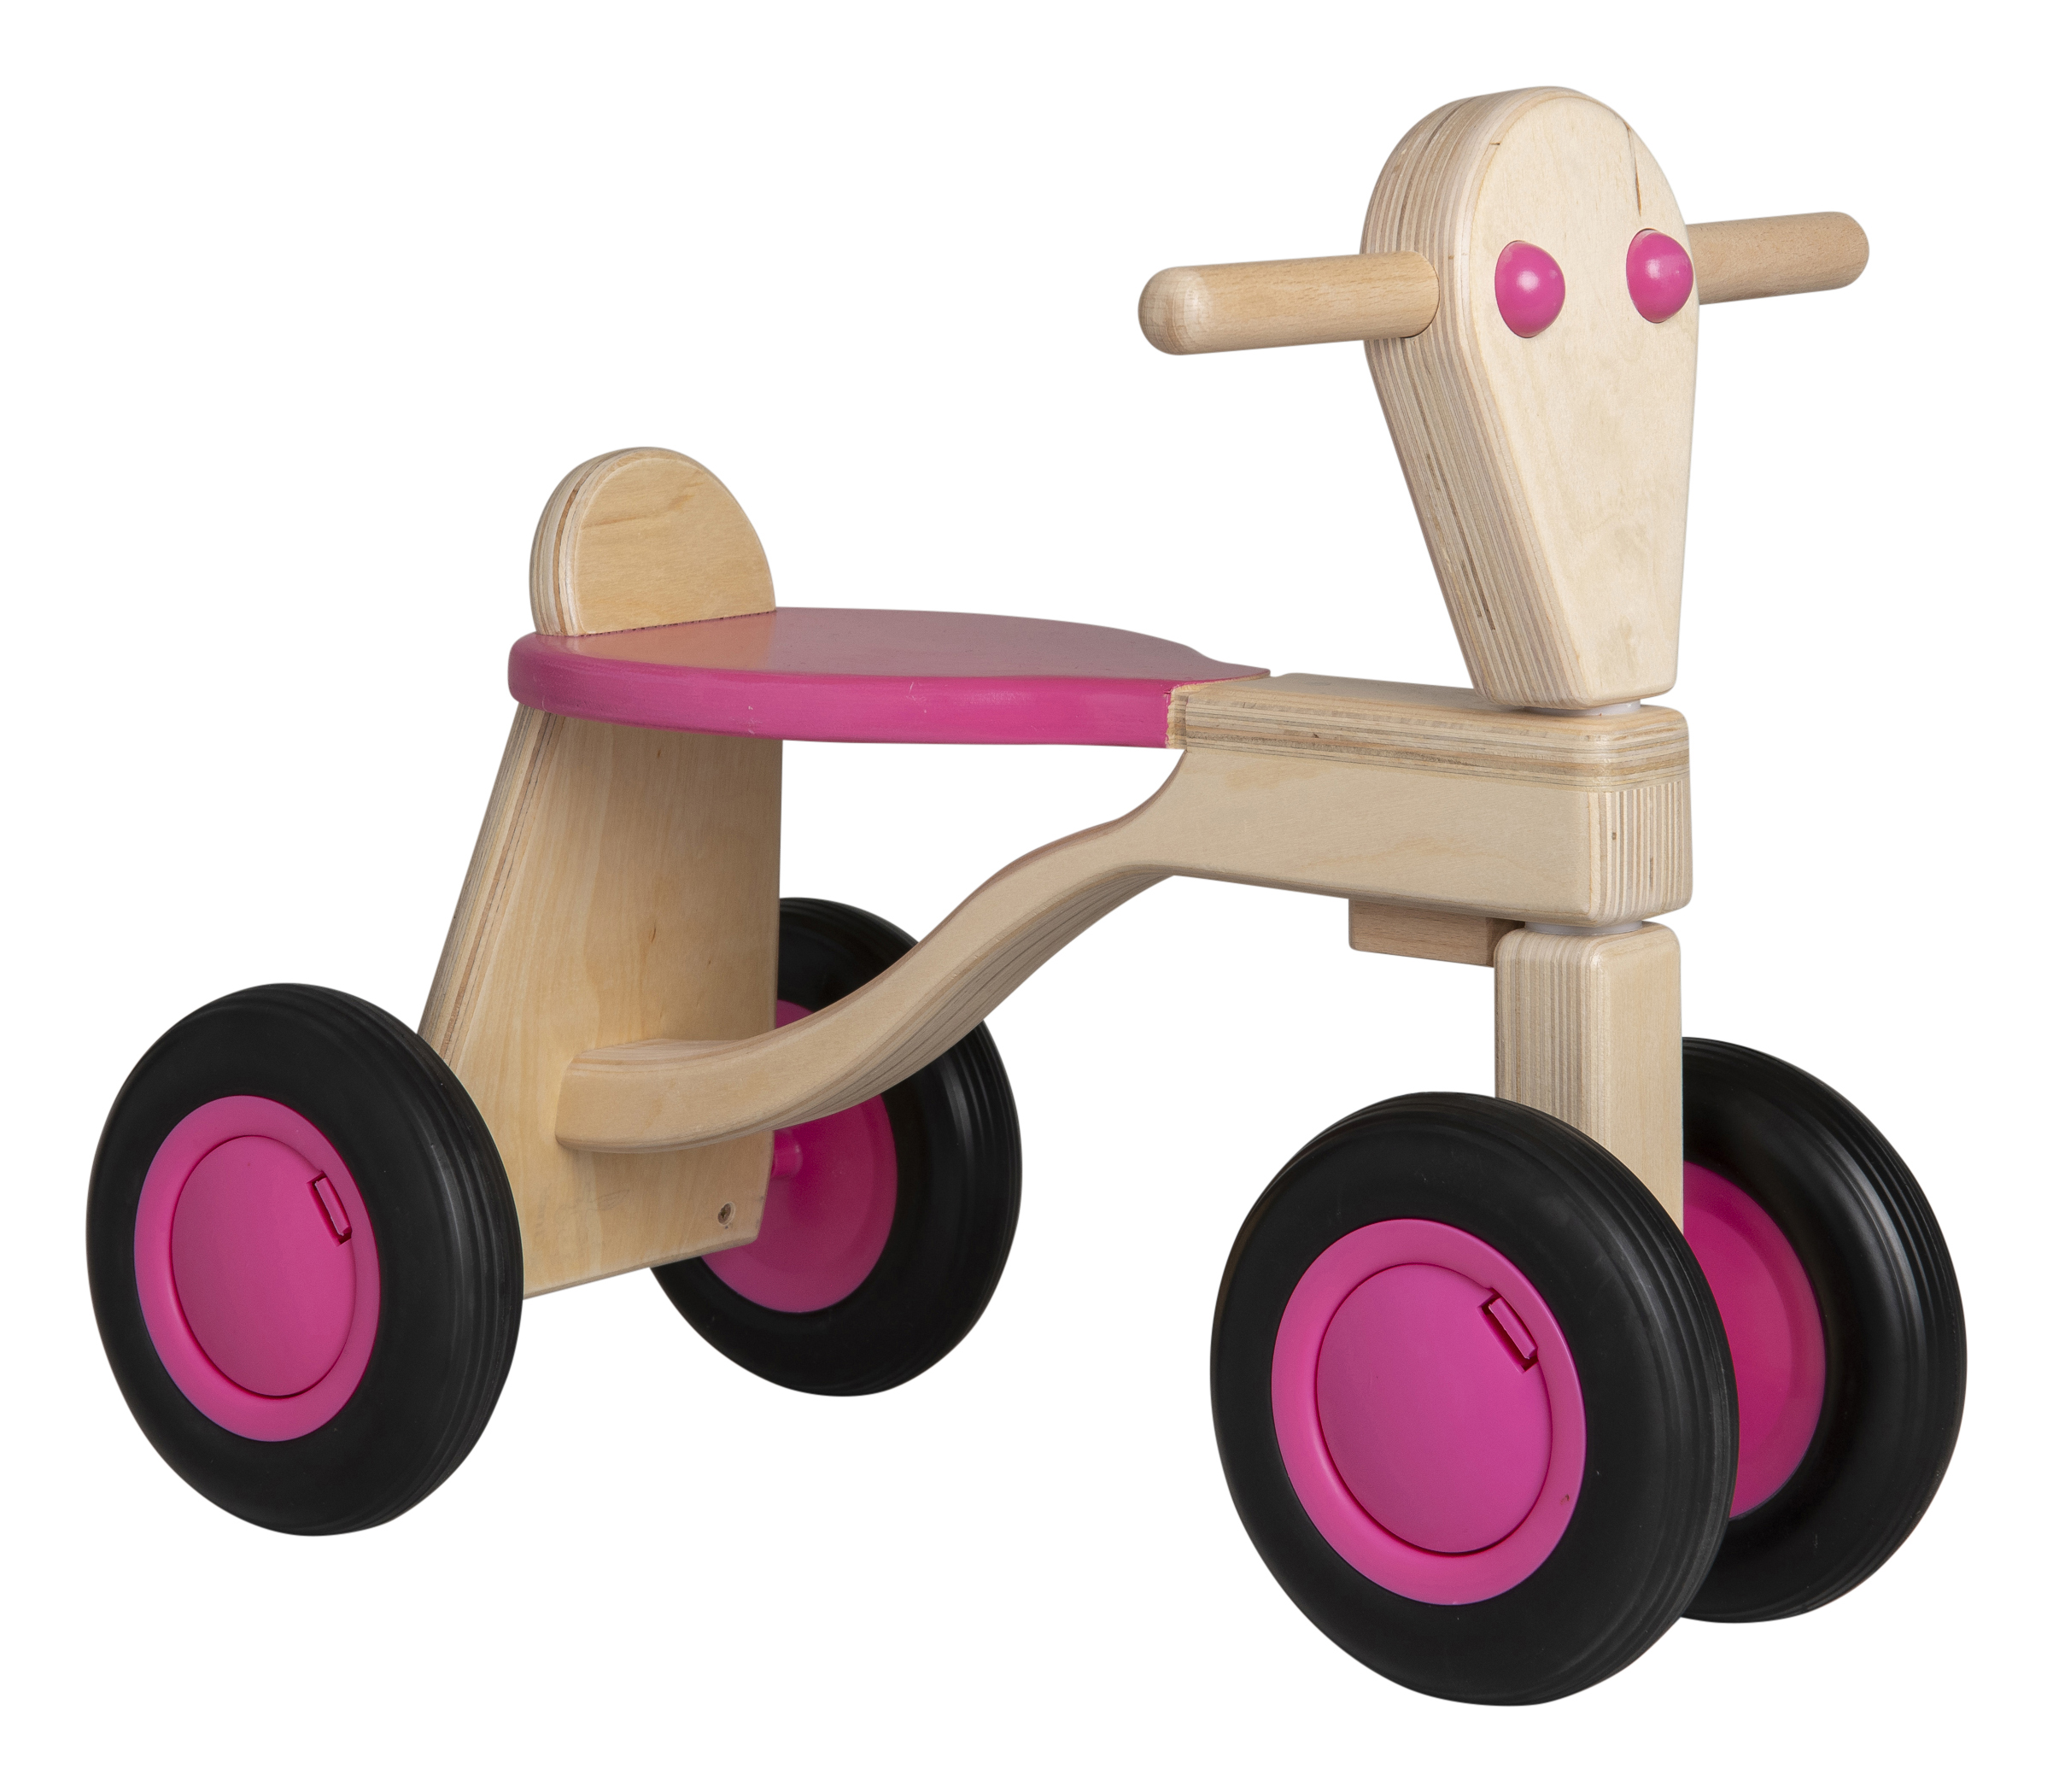 Luchten Voor u beschaving Van Dijk Toys houten loopfiets roze - berken